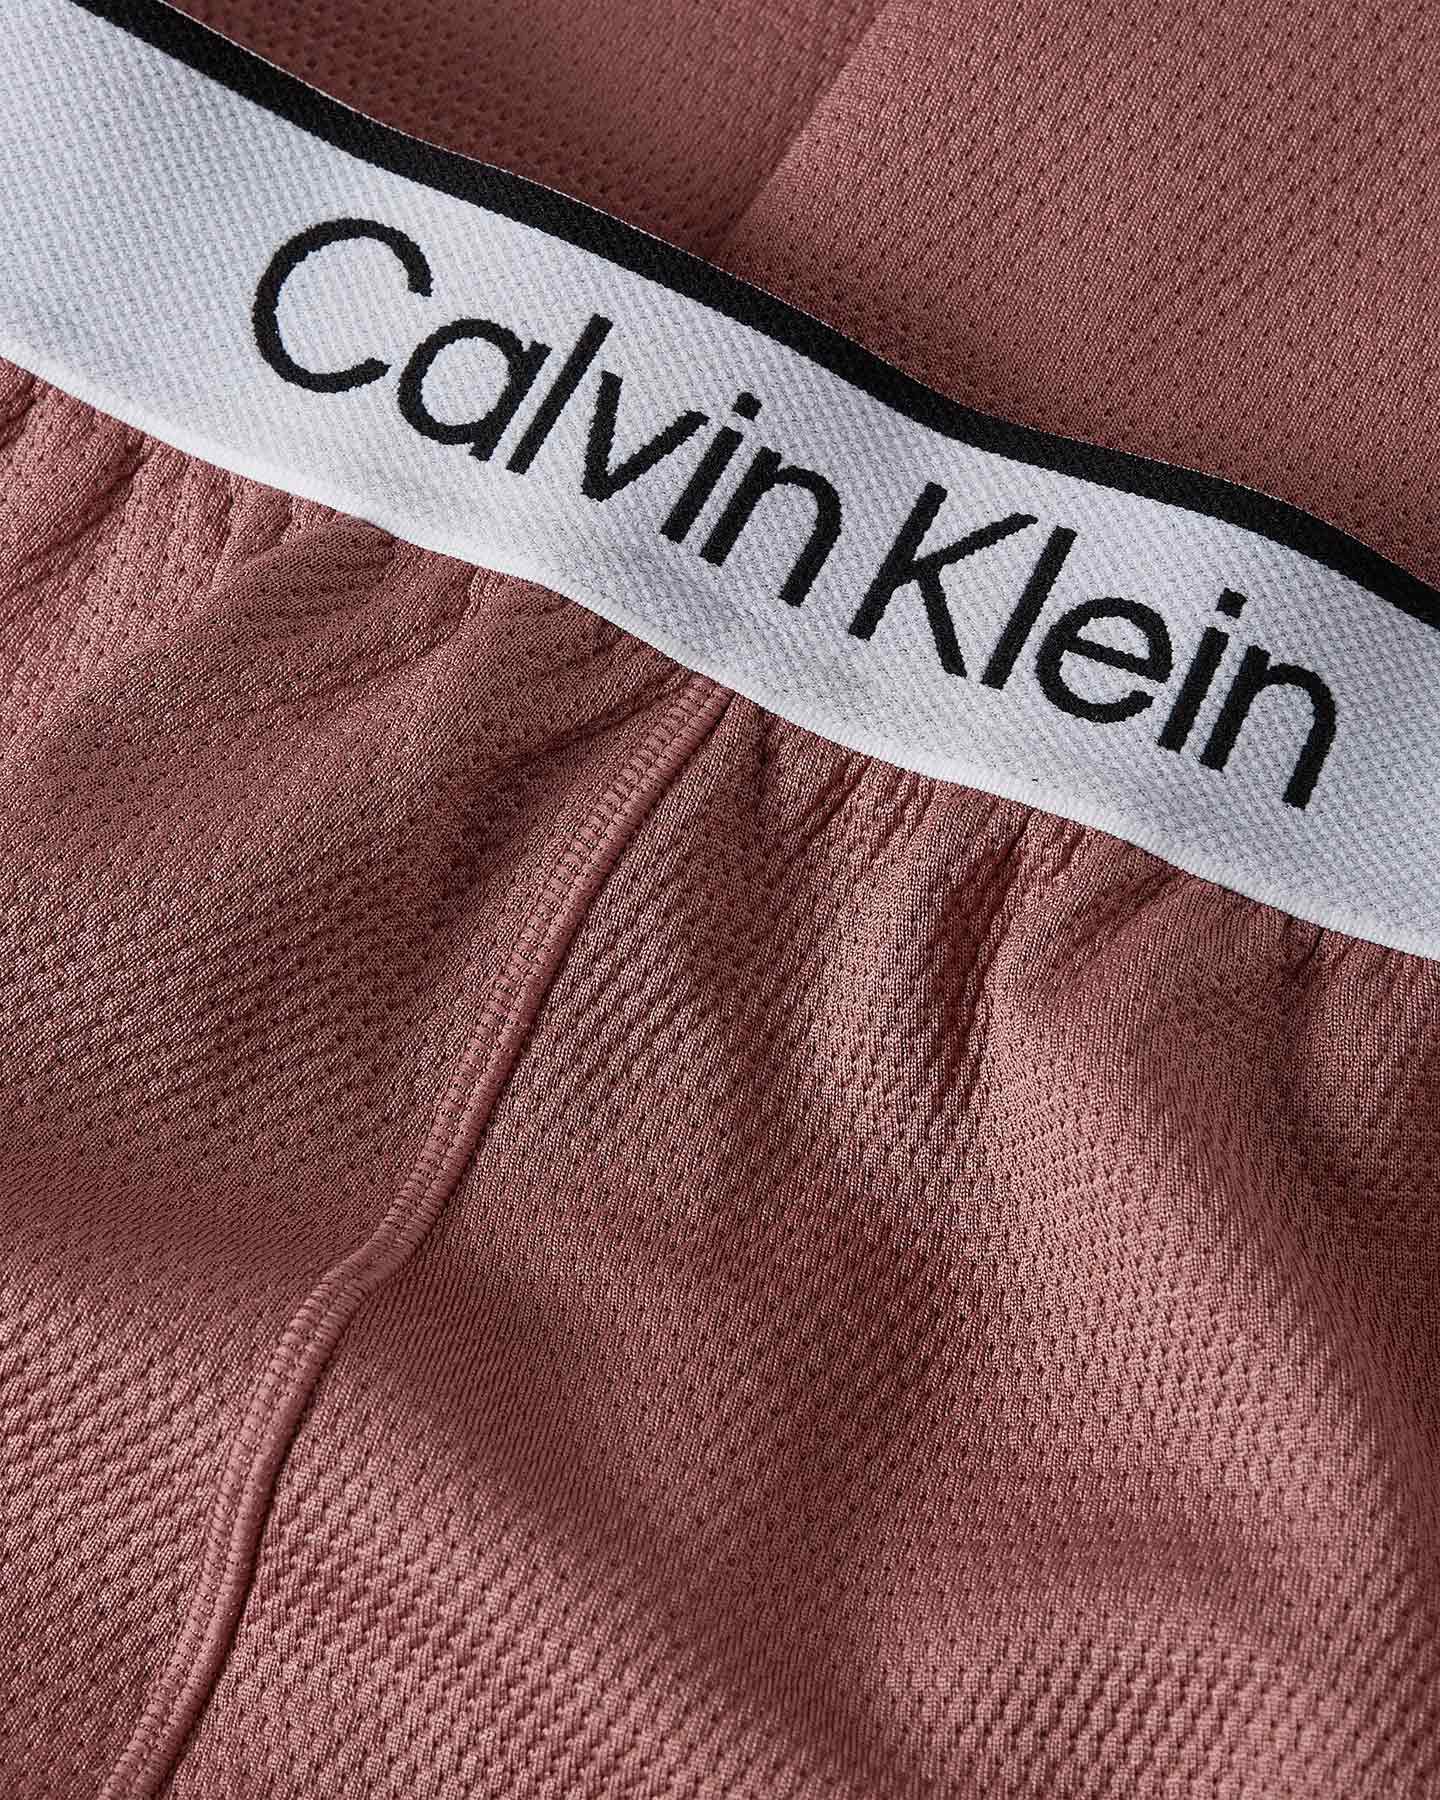  Pantalone CALVIN KLEIN SPORT FLARE W S4129334|LKO|XS scatto 2